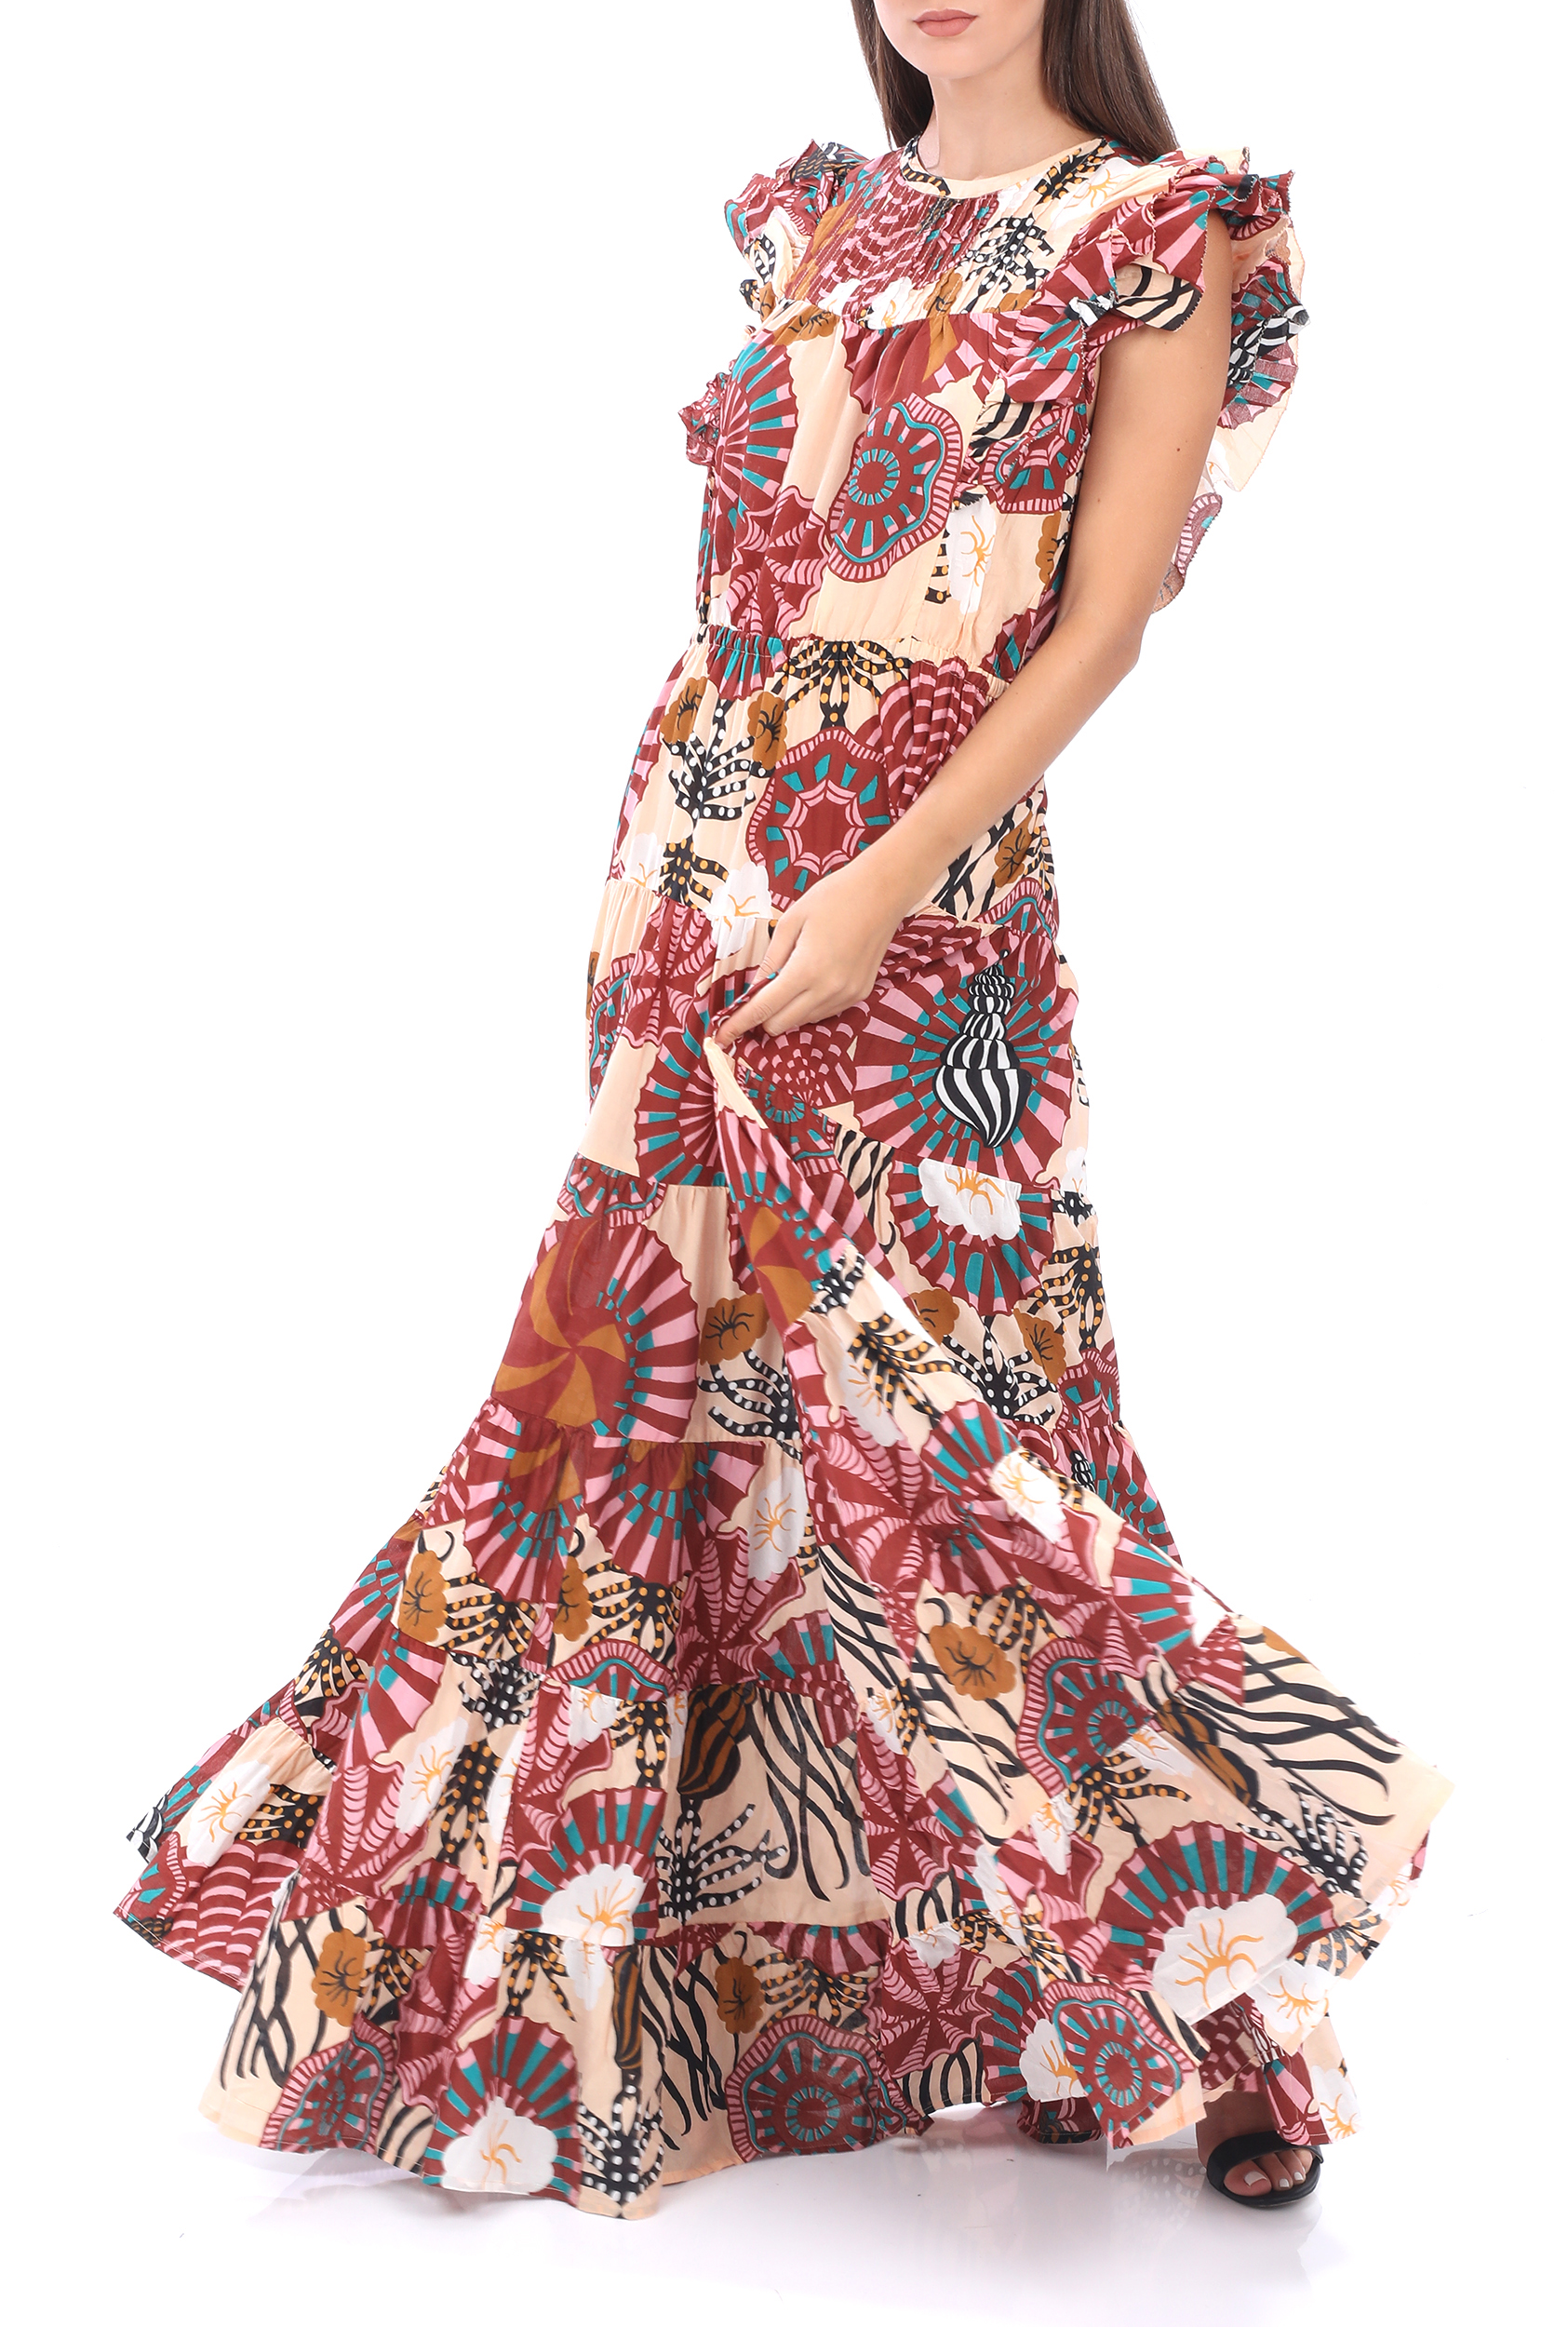 SCOTCH & SODA – Γυναικείο maxi φόρεμα SCOTCH & SODA Summer dress in print ροζ κόκκινο 1809216.0-0101